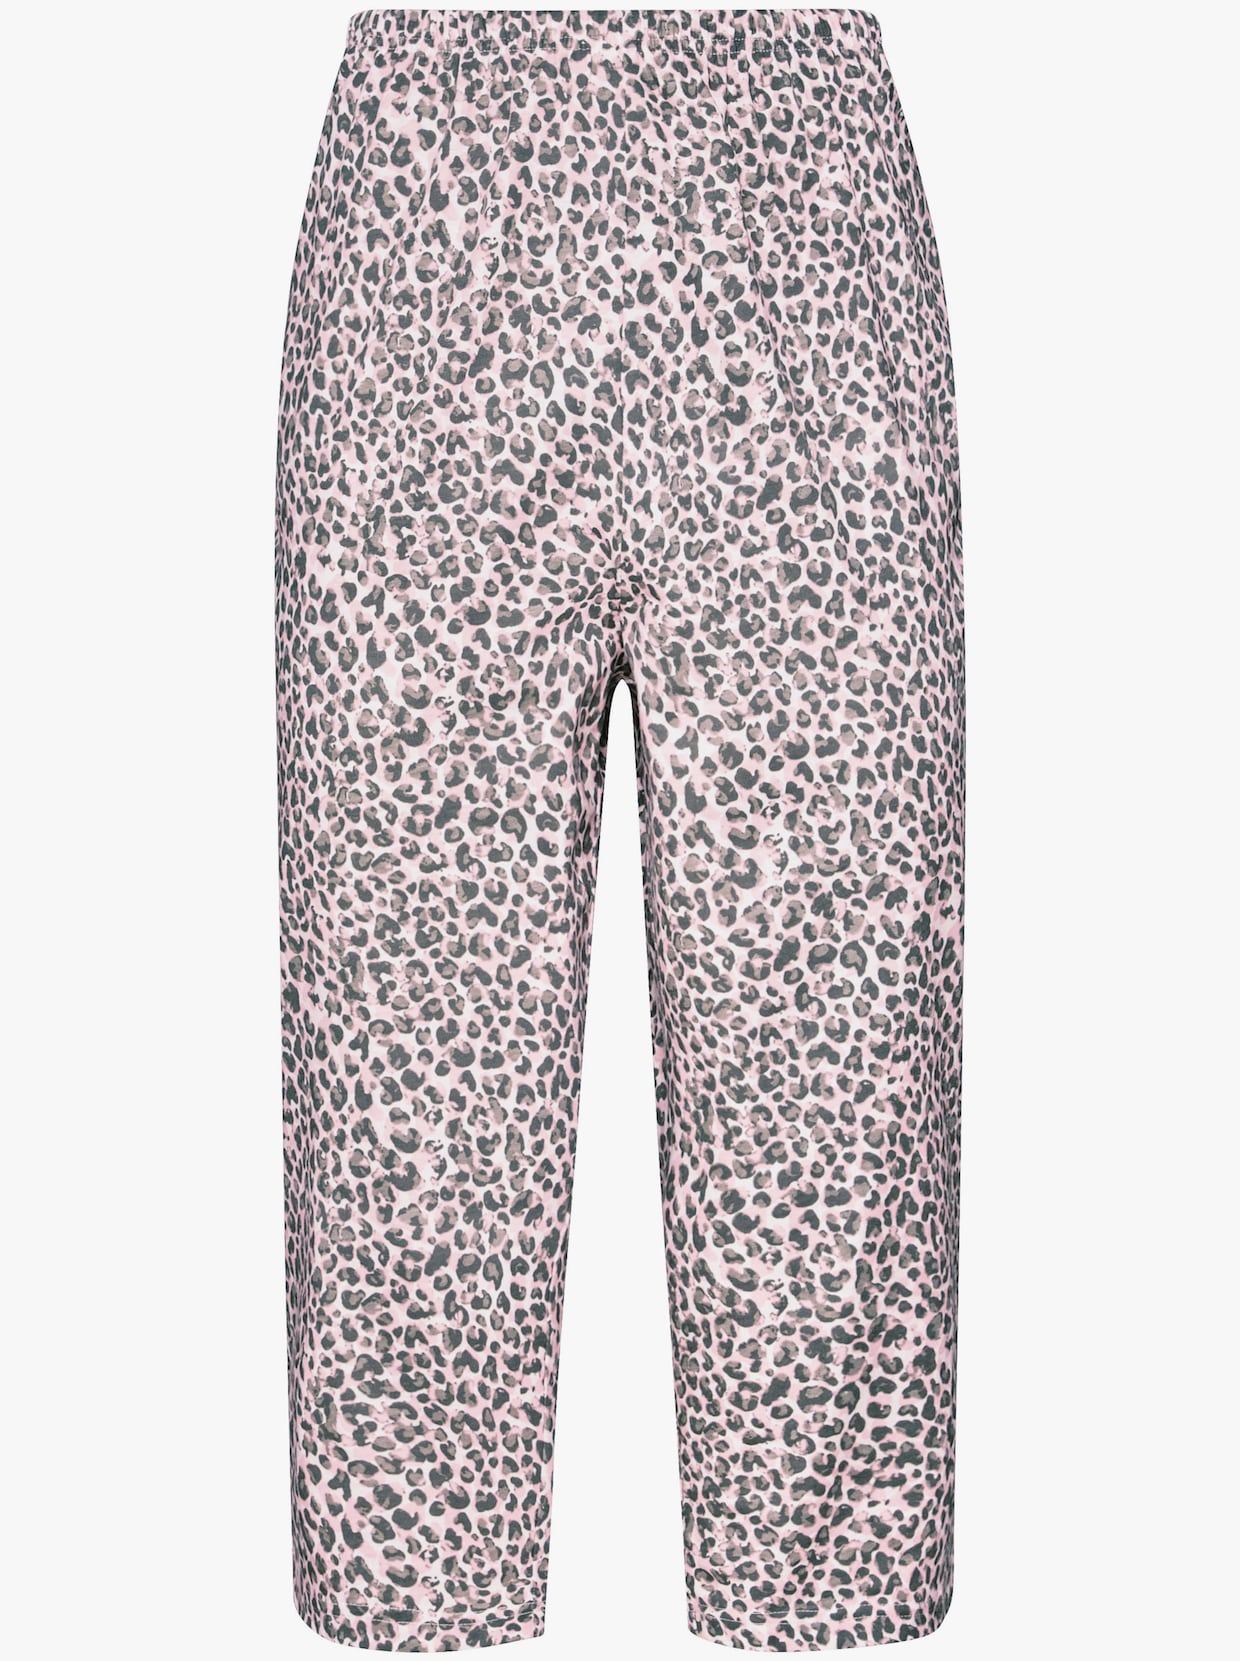 Pyžamo s capri nohavicami - svetloružovo-sivá potlač